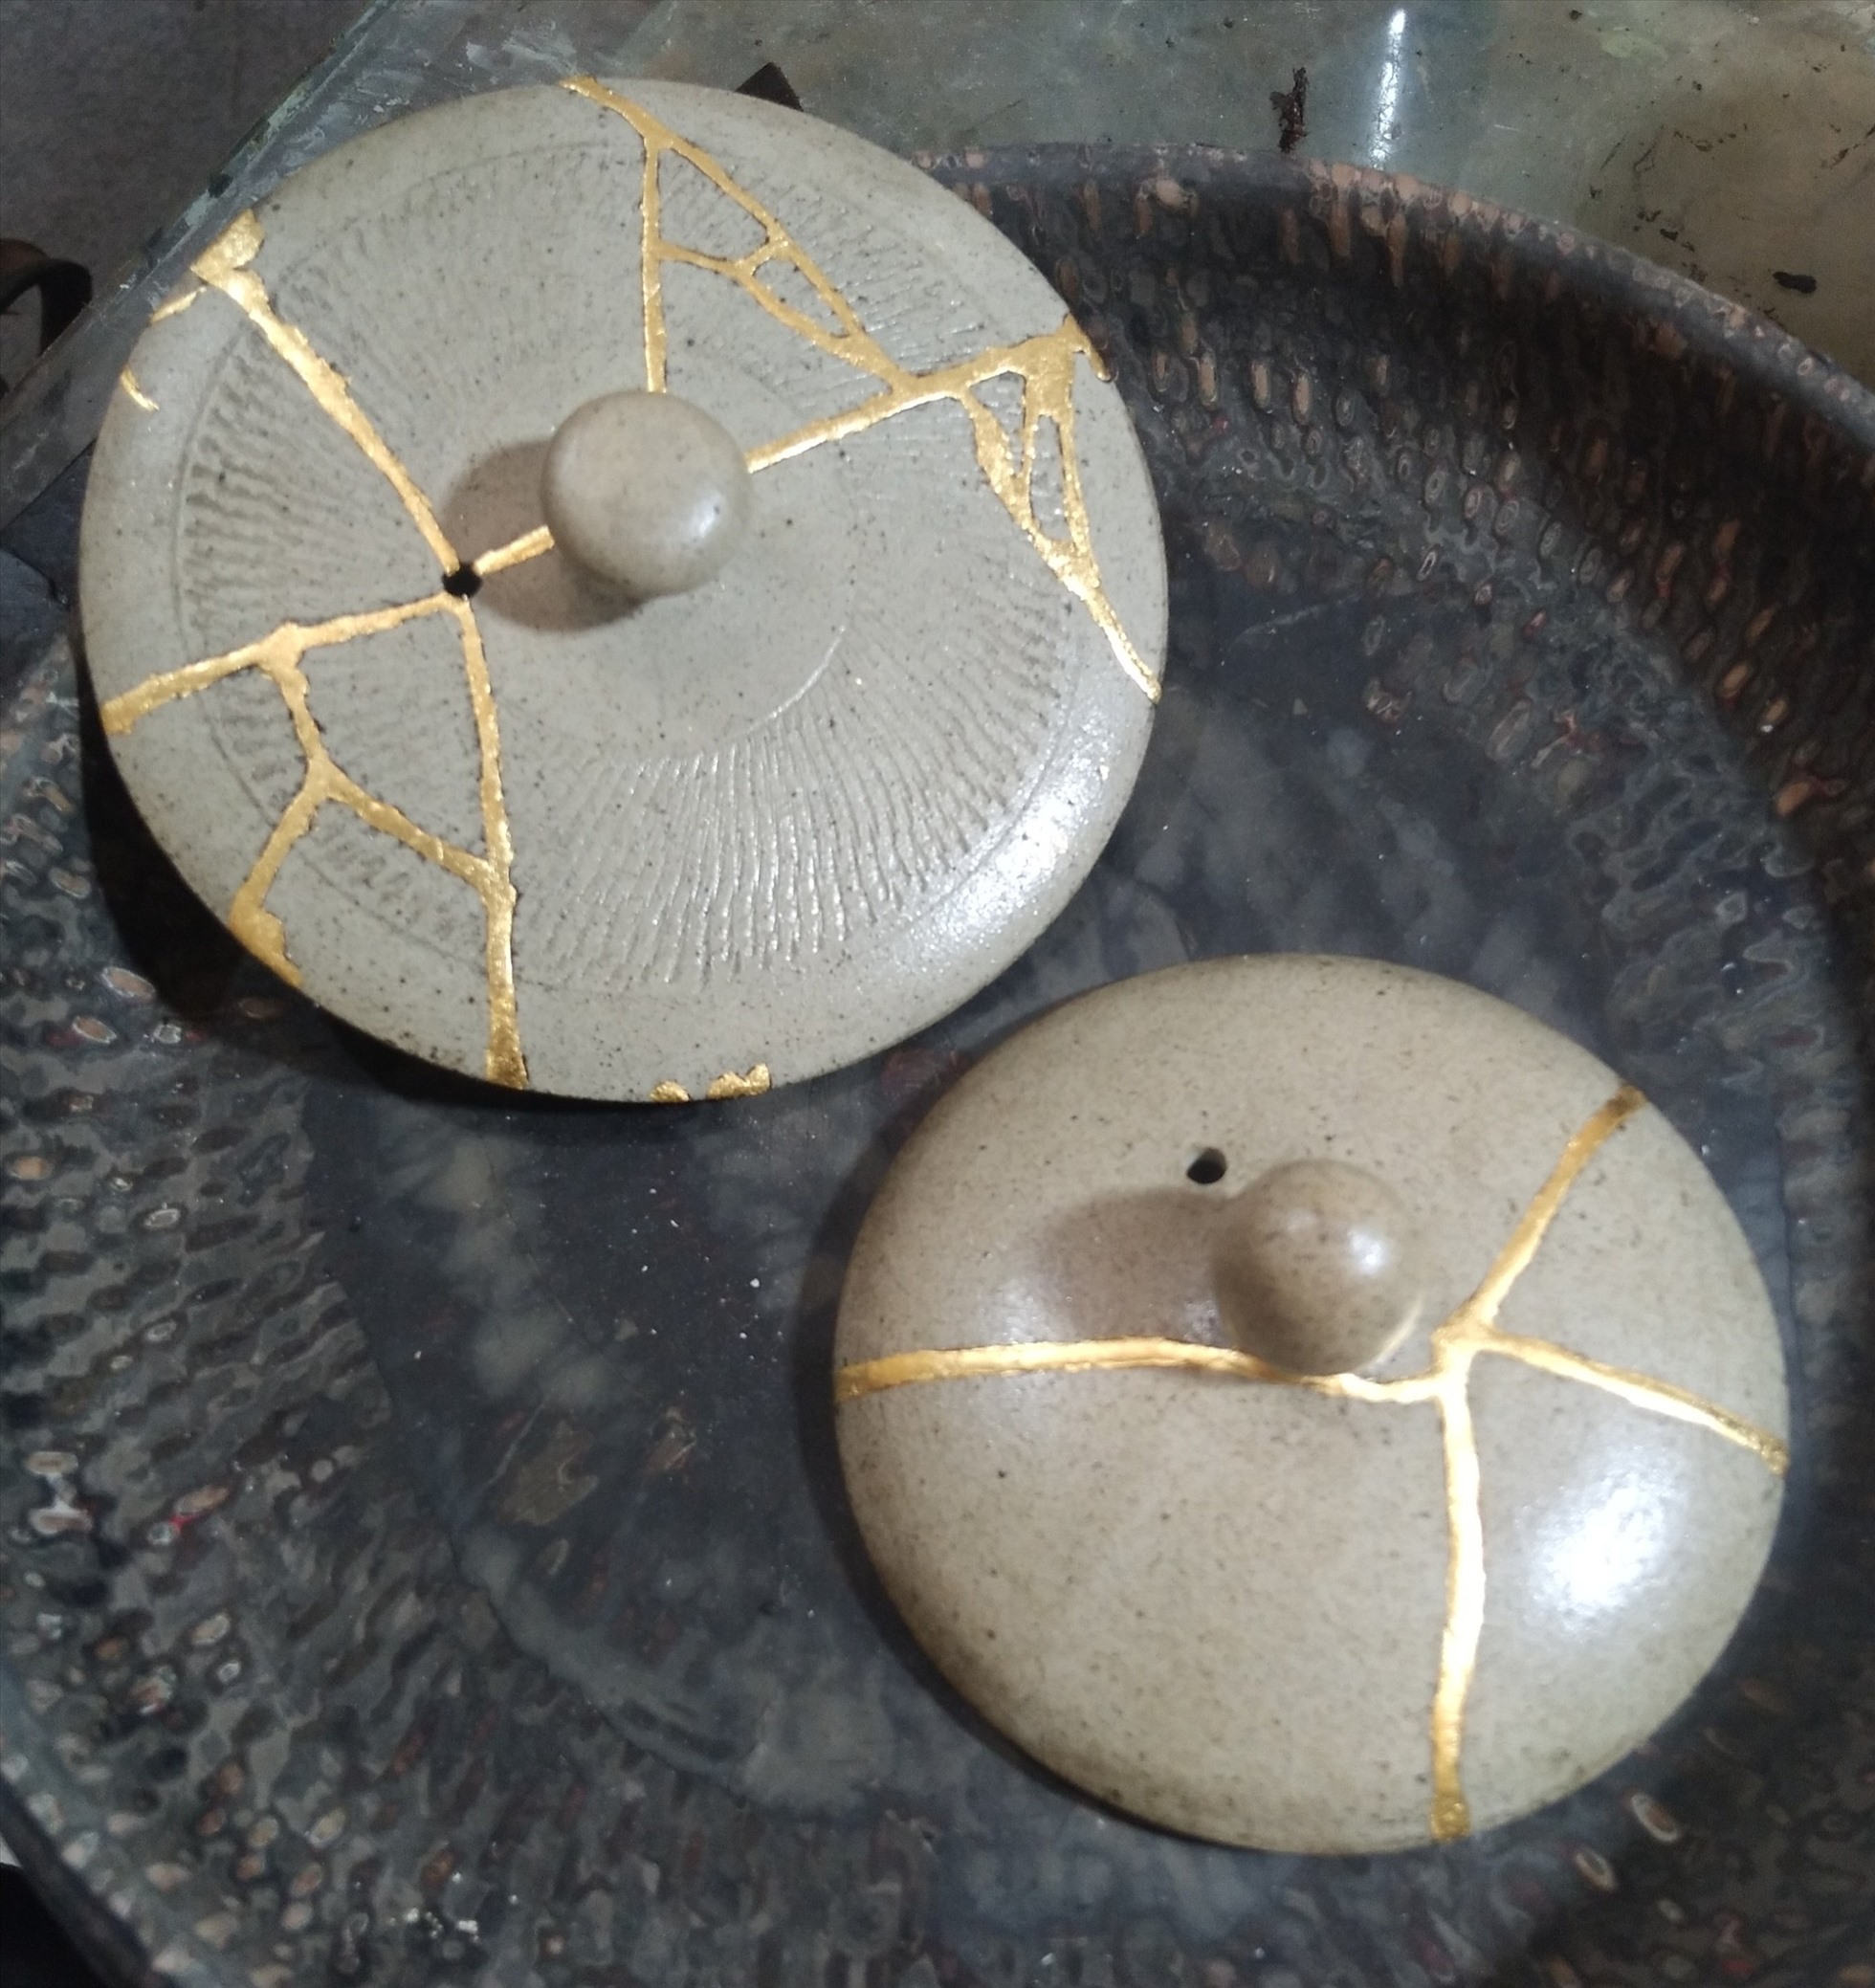 Nghệ thuật (Kintsugi) gắn đồ sành sứ bị vỡ rồi thếp vàng rất nổi tiếng ở Nhật Bản.